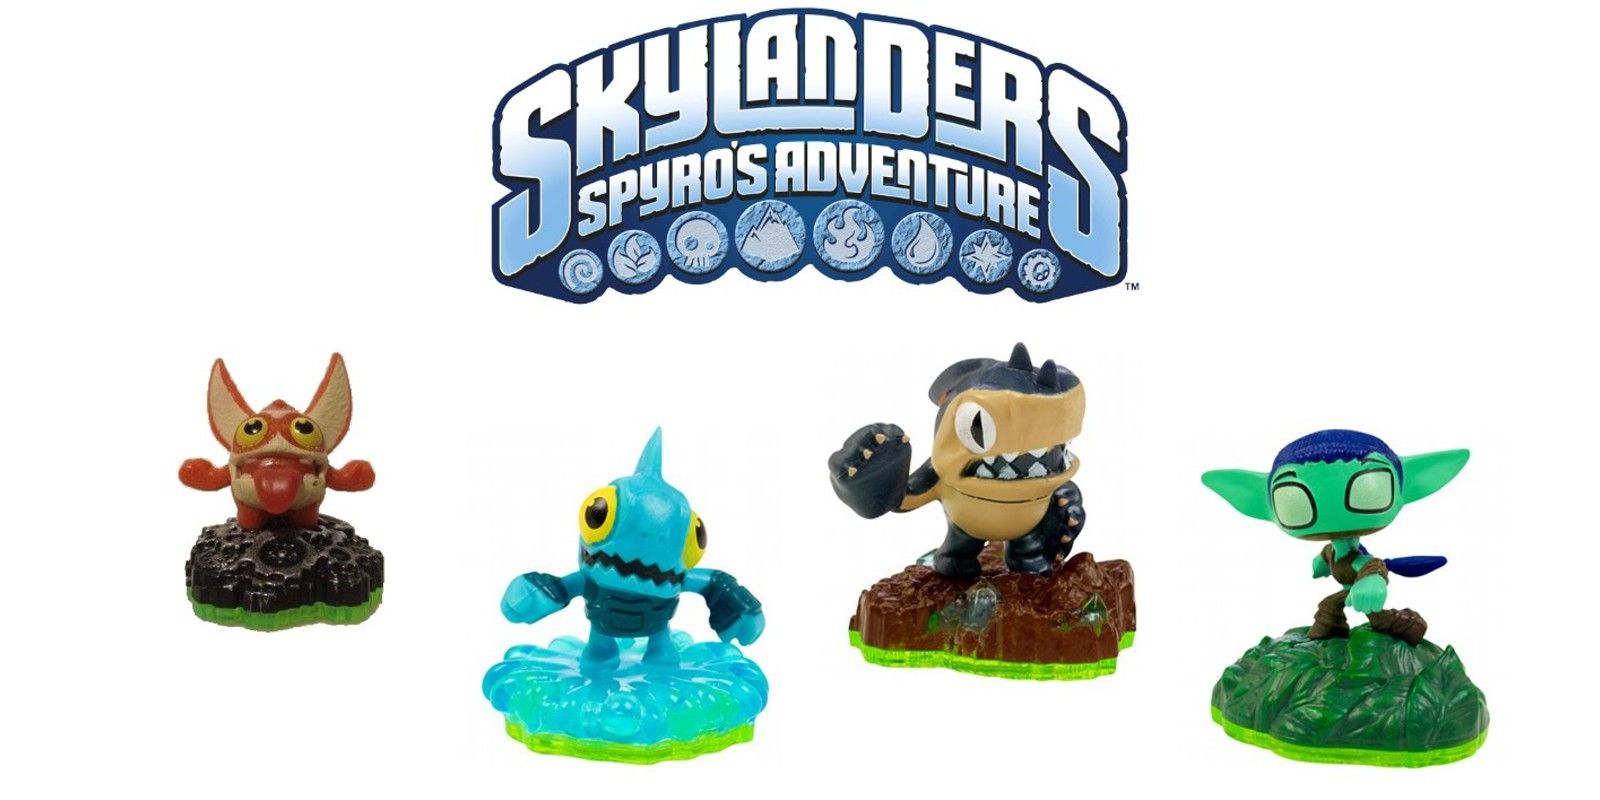 Skylanders adventure. Skylanders Spyros Adventure фигурки. Skylanders Spyro's Adventure фигурки. Фигурка Skylanders Adventure Nintendo. Warnado. Skylanders Spyro.